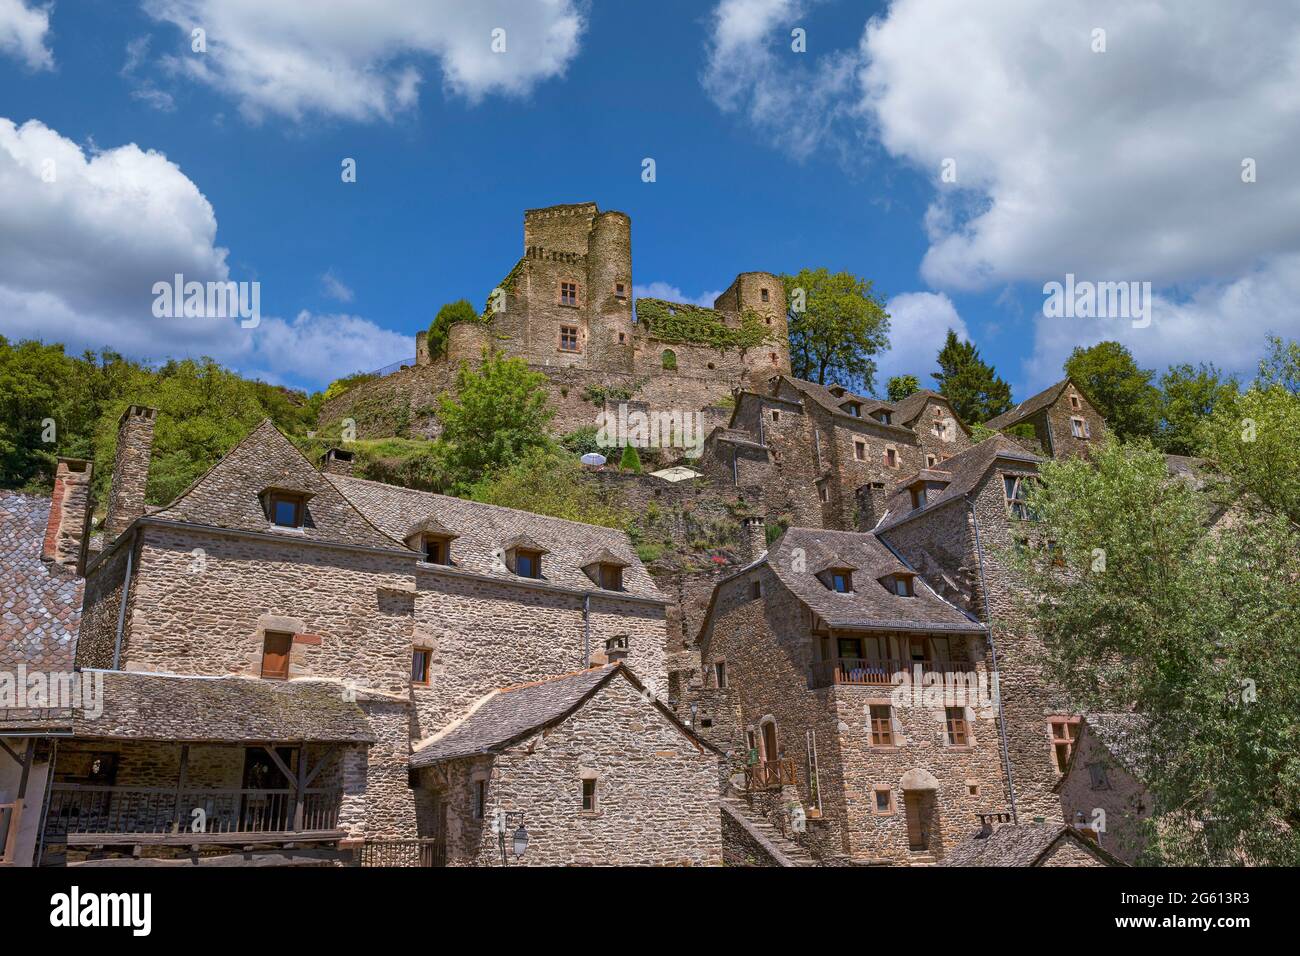 Frankreich, Aveyron, Dorf Belcastel, ehemalige Etappe auf der Straße nach Saint-Jacques-de-Compostelle, Dorf als eines der schönsten Dörfer Frankreichs bezeichnet, mittelalterliche Burg Belcastel, die Ende der 1970er Jahre vom Architekten Fernand Pouillon über dem Dorf restauriert wurde Stockfoto